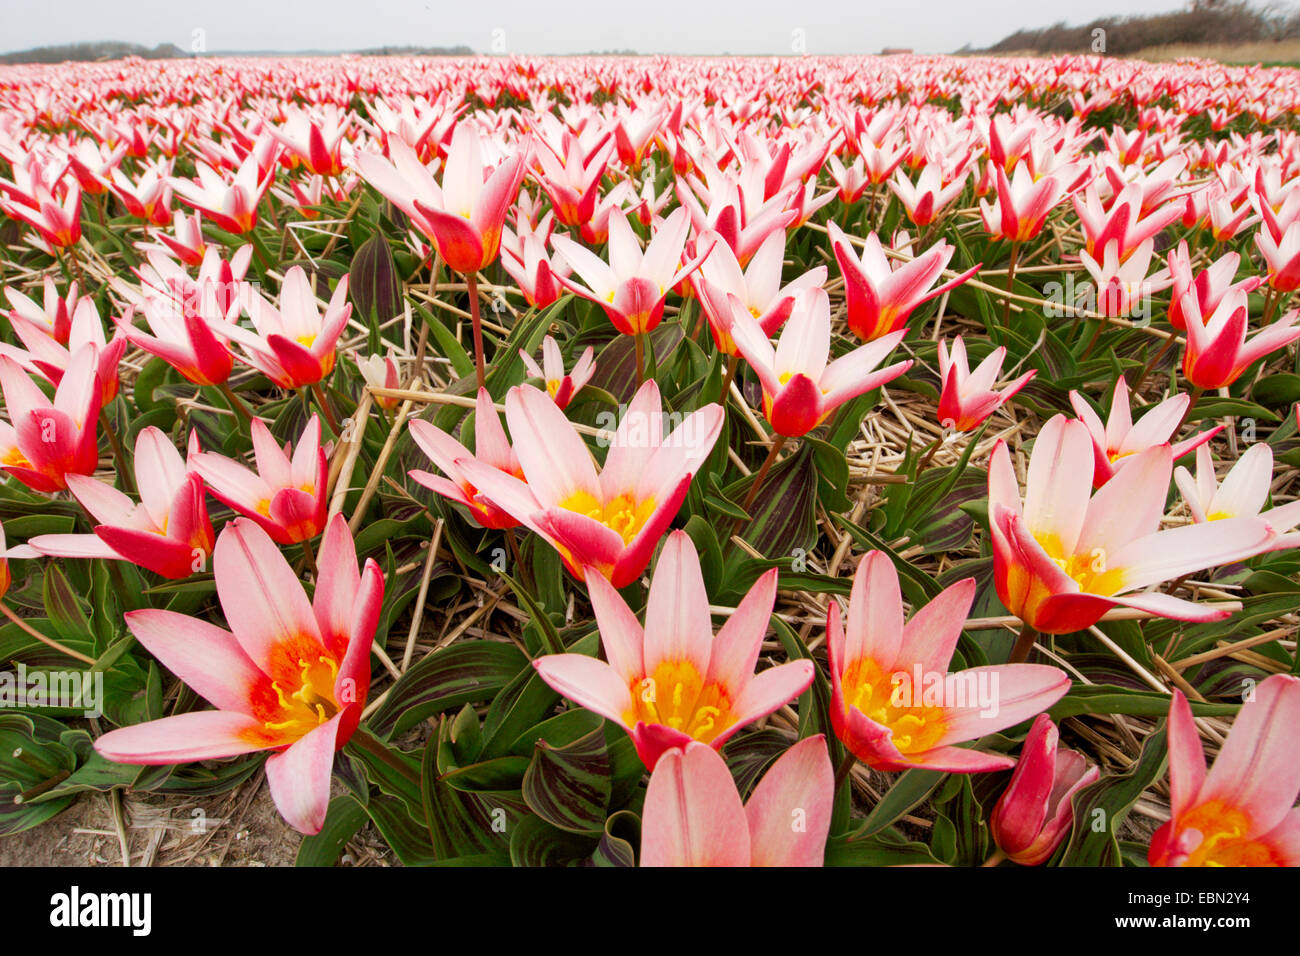 common garden tulip (Tulipa gesneriana), field of tulips, Netherlands Stock Photo